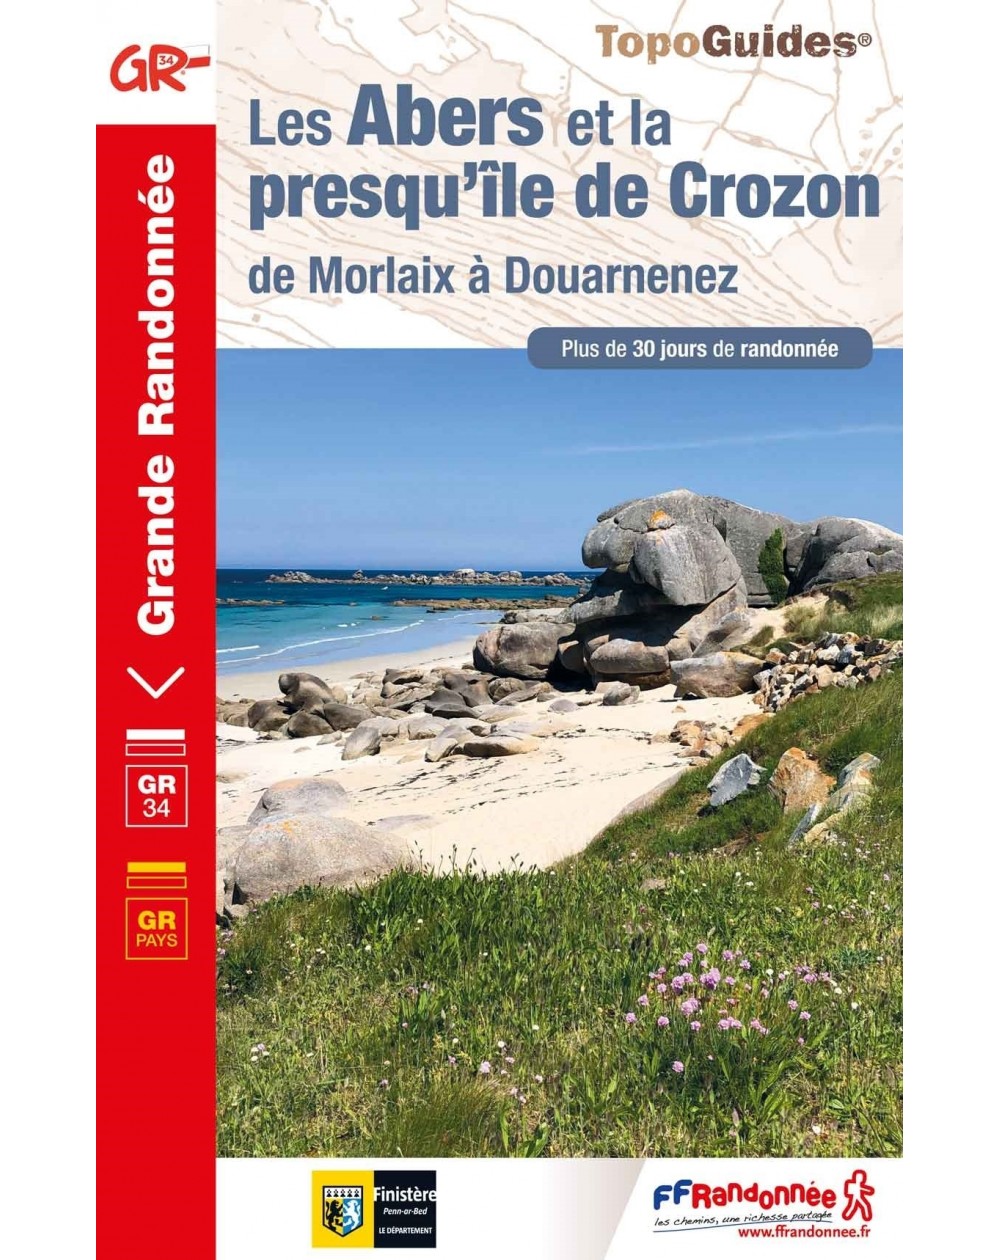 GR34- Les Abers et la presqu'île de Crozon | Topoguide FFRP